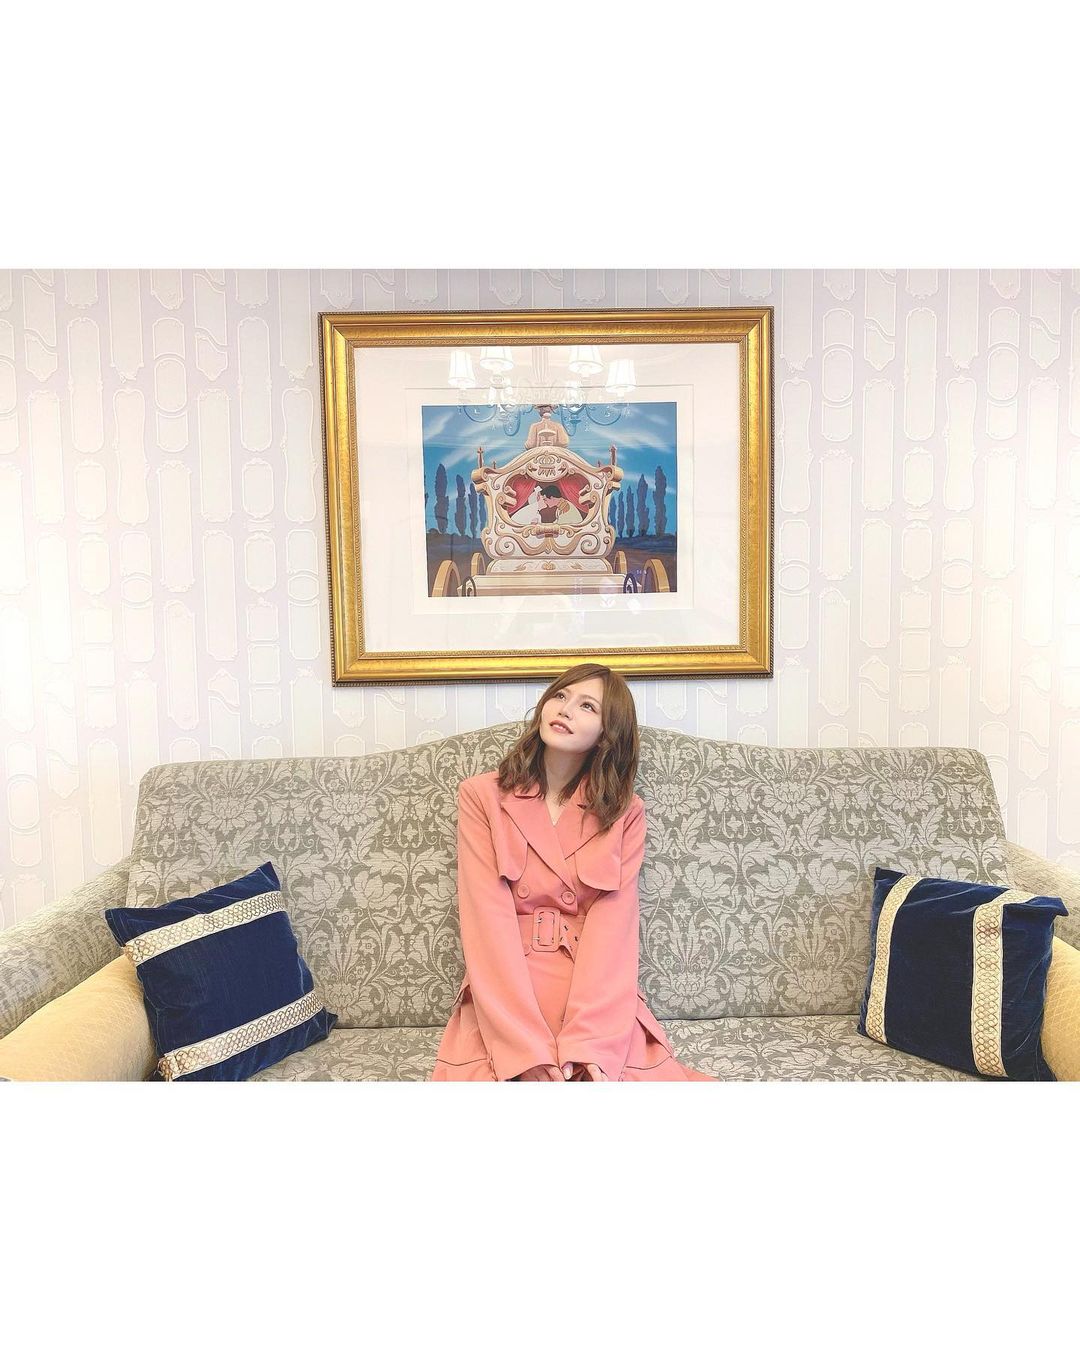 込山榛香 ディズニーホテルでの写真達 シンデレラルーム どこも可愛くて 沢山写真撮りました ディズニーランドホテルの キャラクタールームにずっと泊まりた Moe Zine